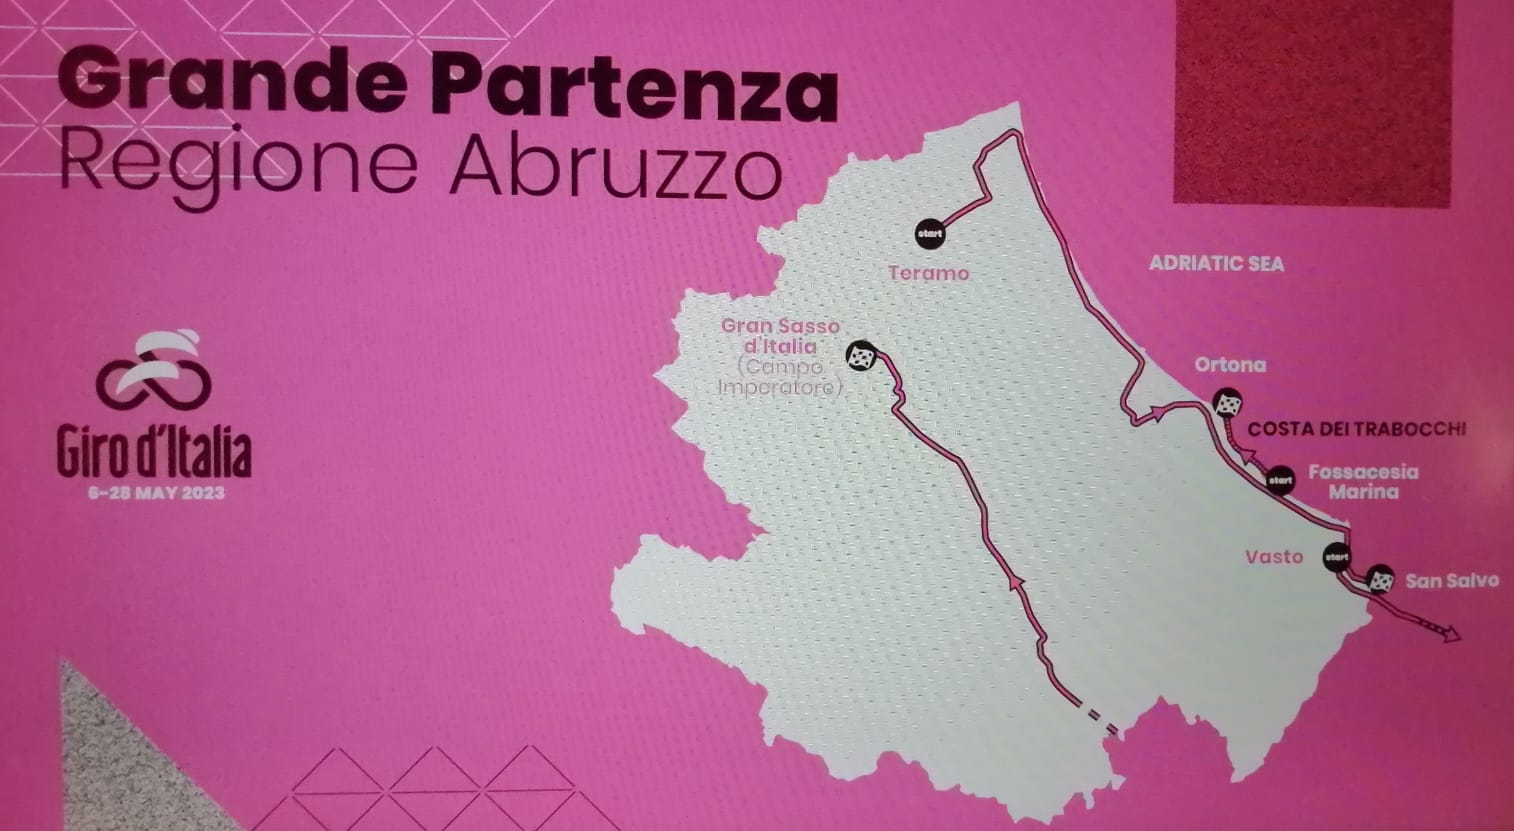 Giro d’Italia: l’Abruzzo proiettato nel mondo per la partenza della grande manifestazione sportiva